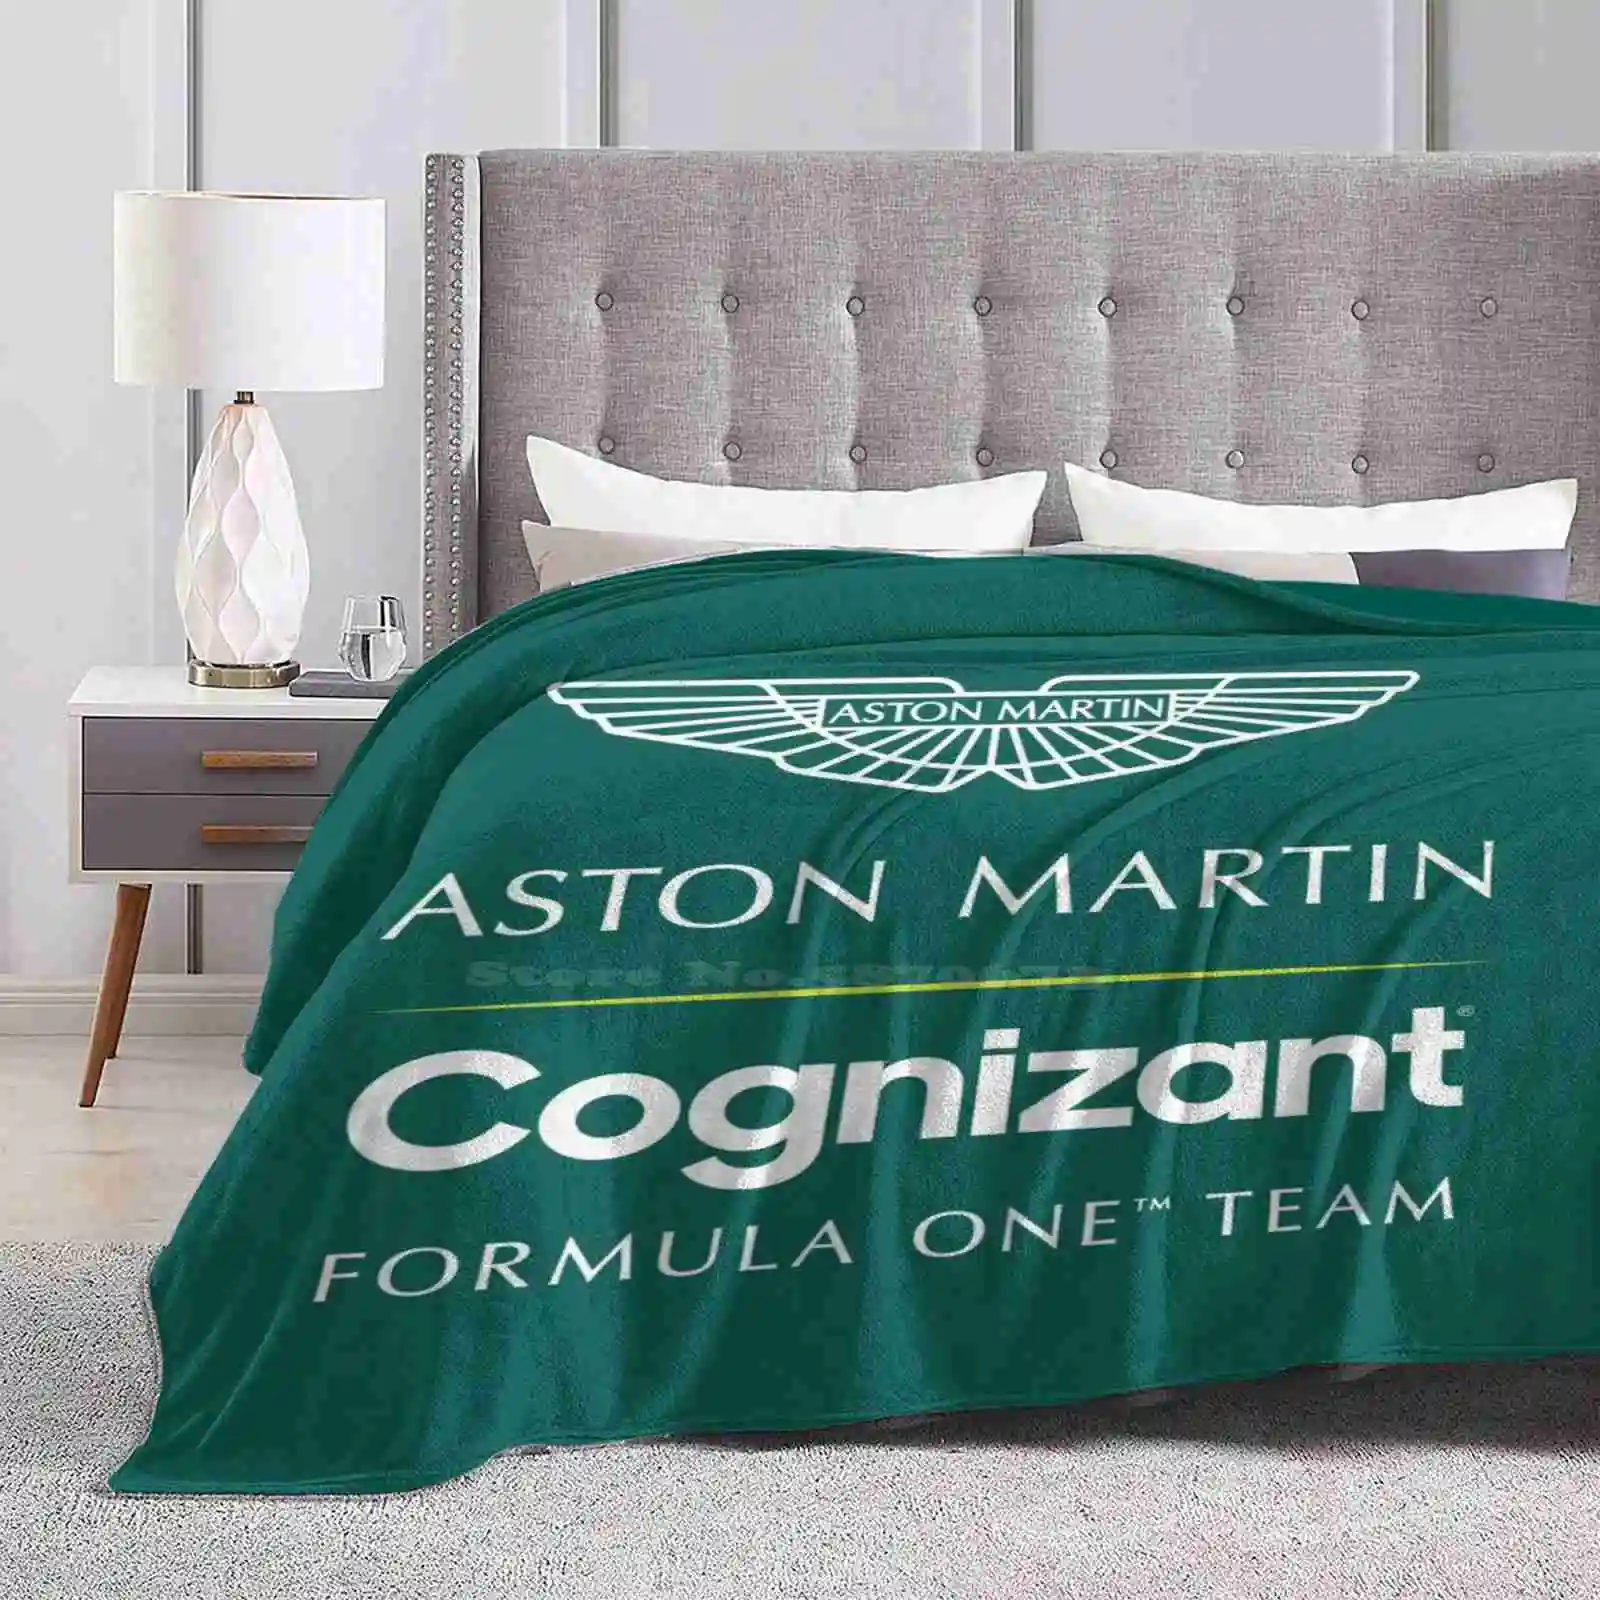 

Командное одеяло Aston познавательное, мягкое теплое дорожное портативное одеяло команды Aston 2021 2020 2019 Cup Подиум Vettel, британская прогулка